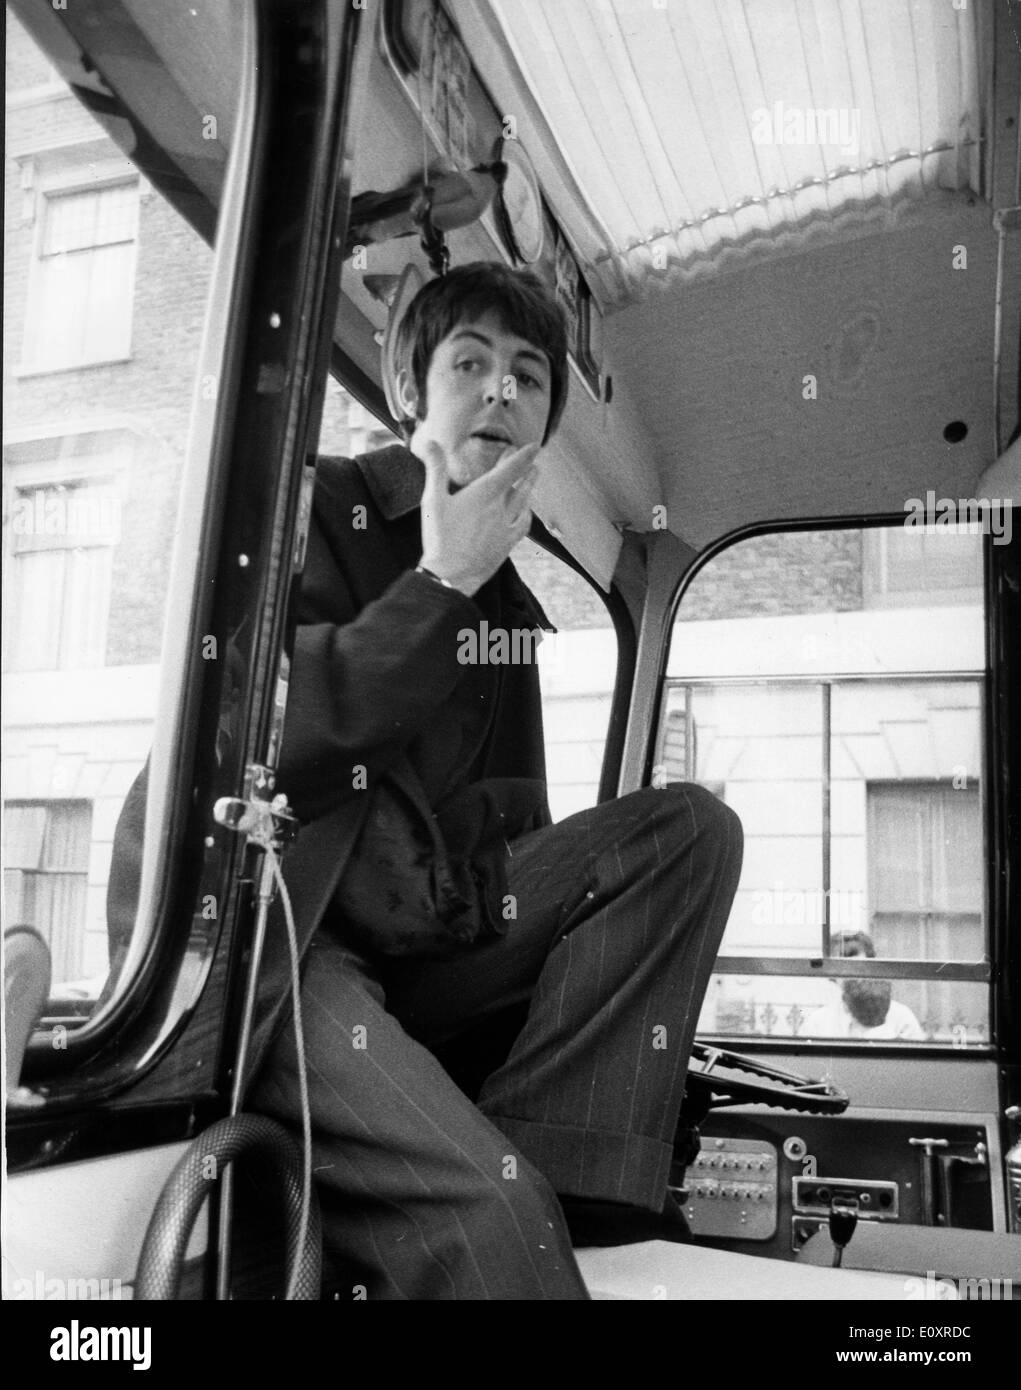 Beatle Paul McCartney on the Magical Mystery Tour Stock Photo